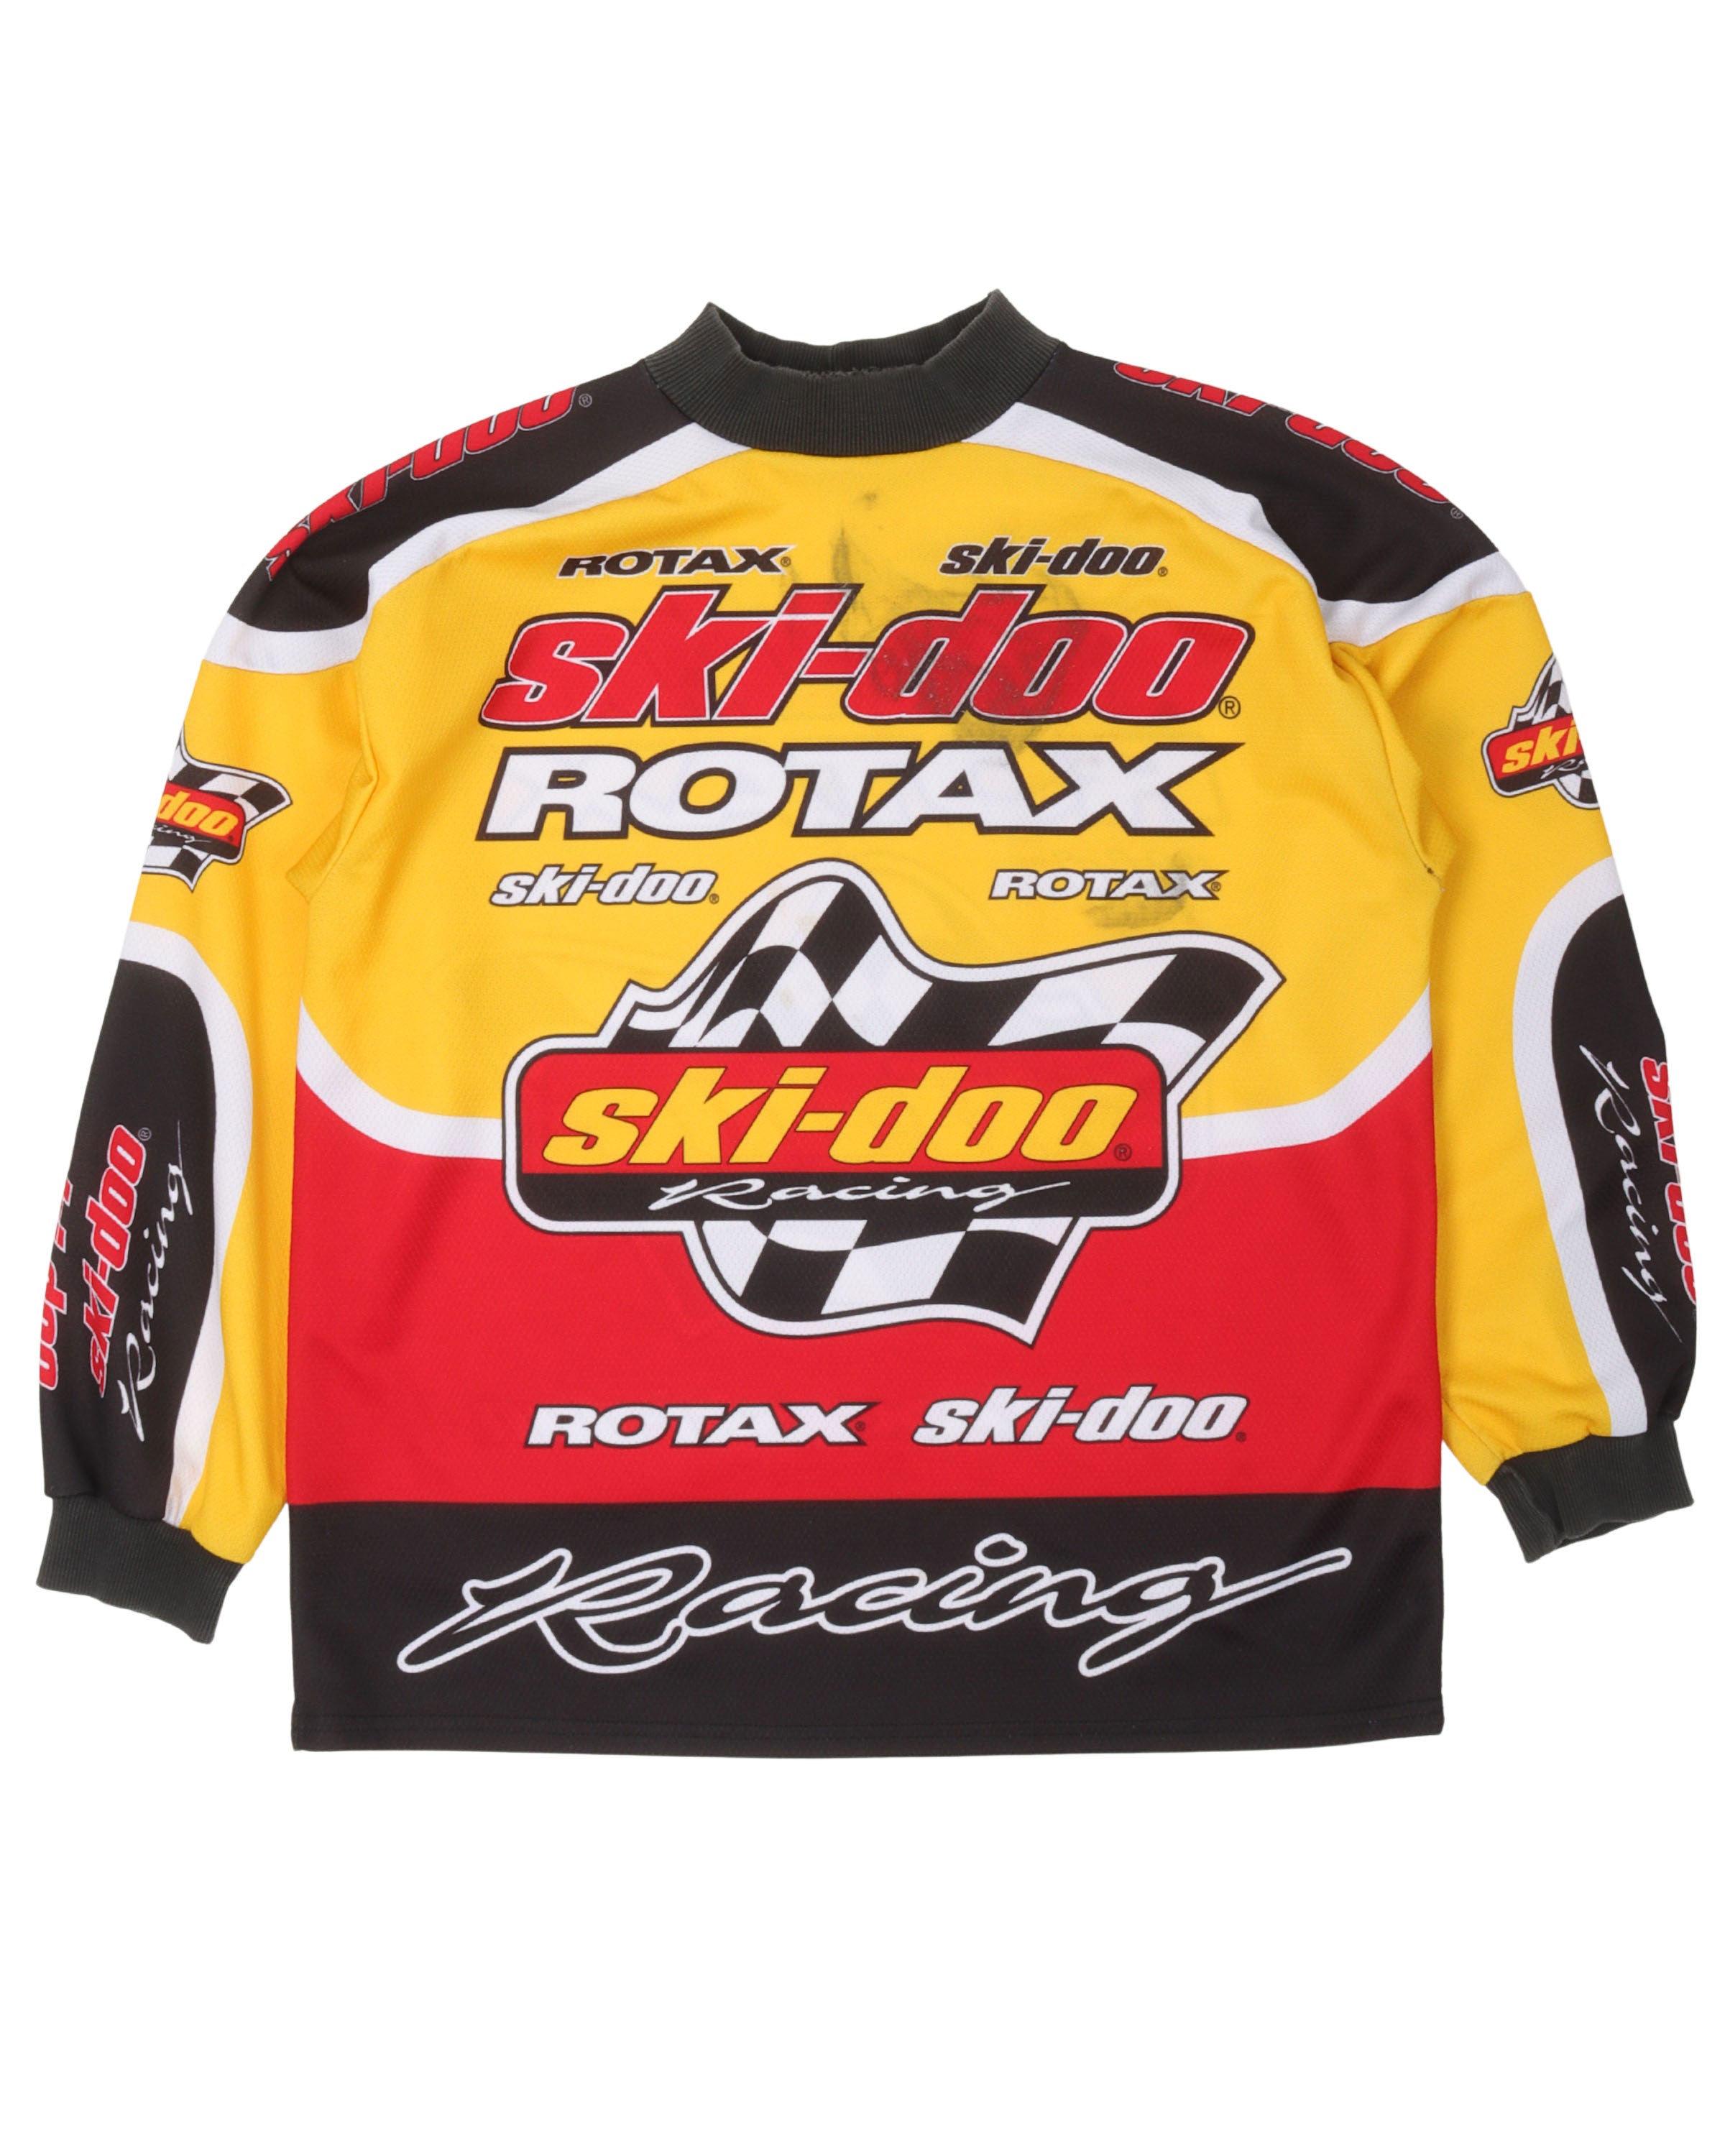 Ski Doo Rotax Racing Jersey